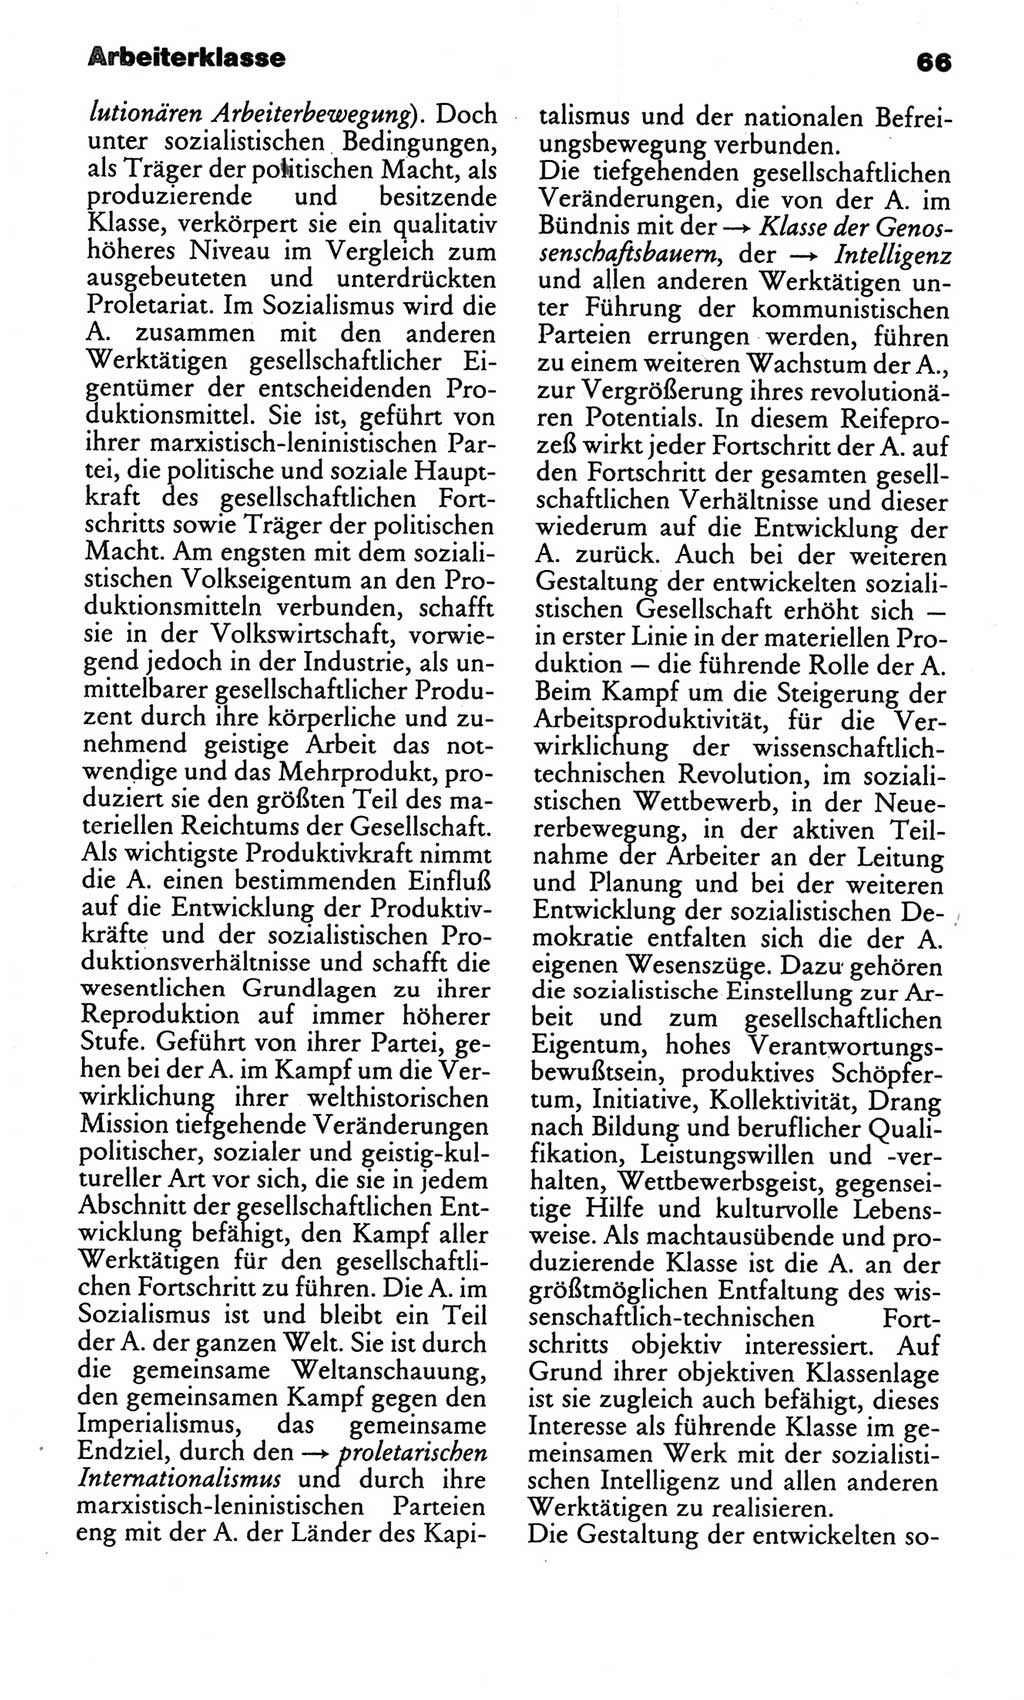 Kleines politisches Wörterbuch [Deutsche Demokratische Republik (DDR)] 1986, Seite 66 (Kl. pol. Wb. DDR 1986, S. 66)